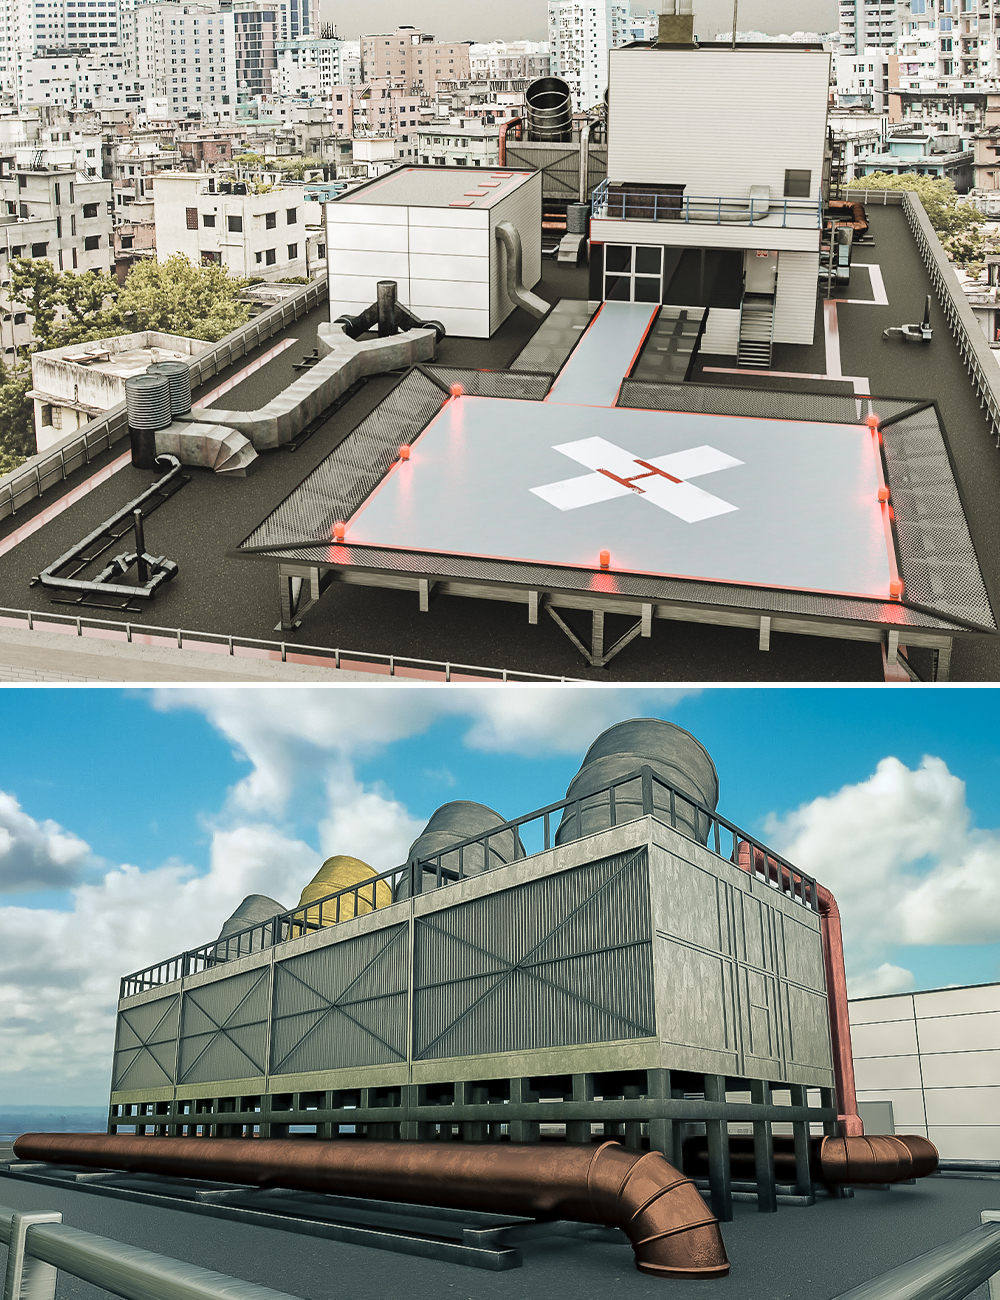 Hospital Helipad by: Tesla3dCorp, 3D Models by Daz 3D